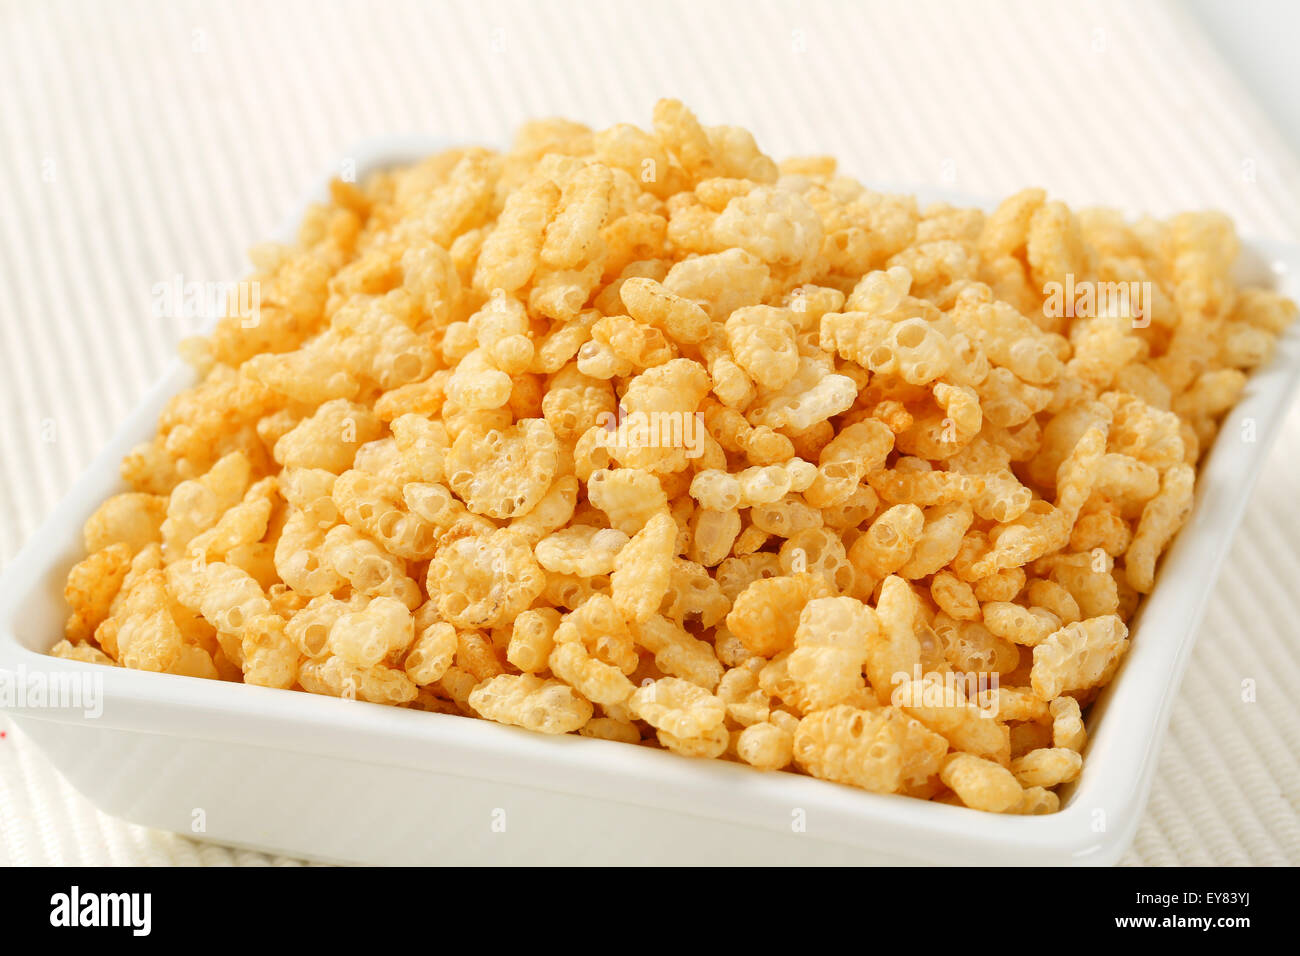 Frühstücks-Cerealien - Reis krispies Stockfoto